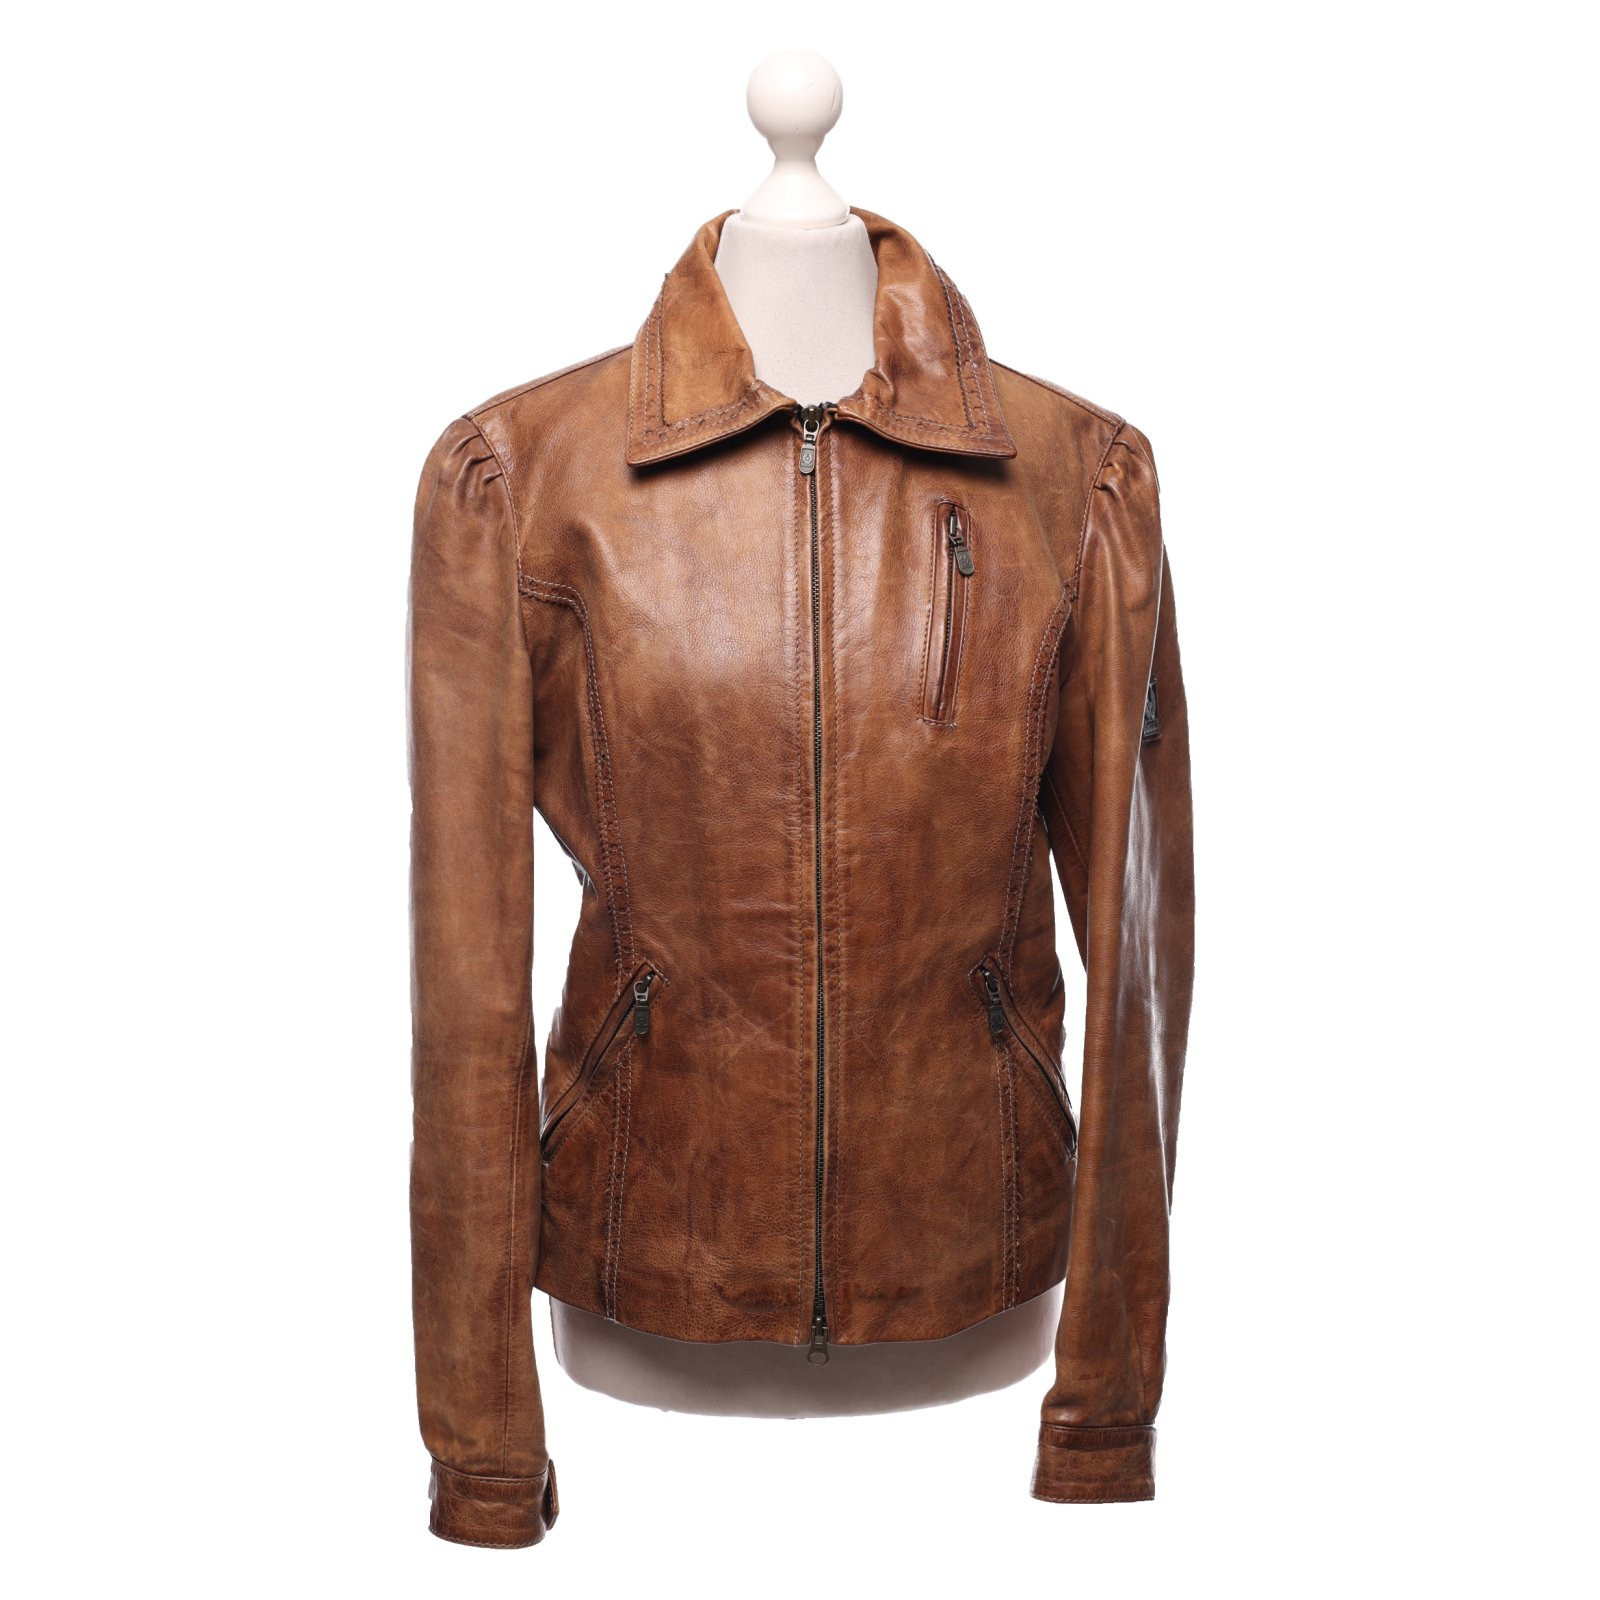 Secreto Impotencia Sastre Belstaff Jacket/Coat Leather in Brown - Second Hand Belstaff Jacket/Coat  Leather in Brown buy used for 205€ (7855328)